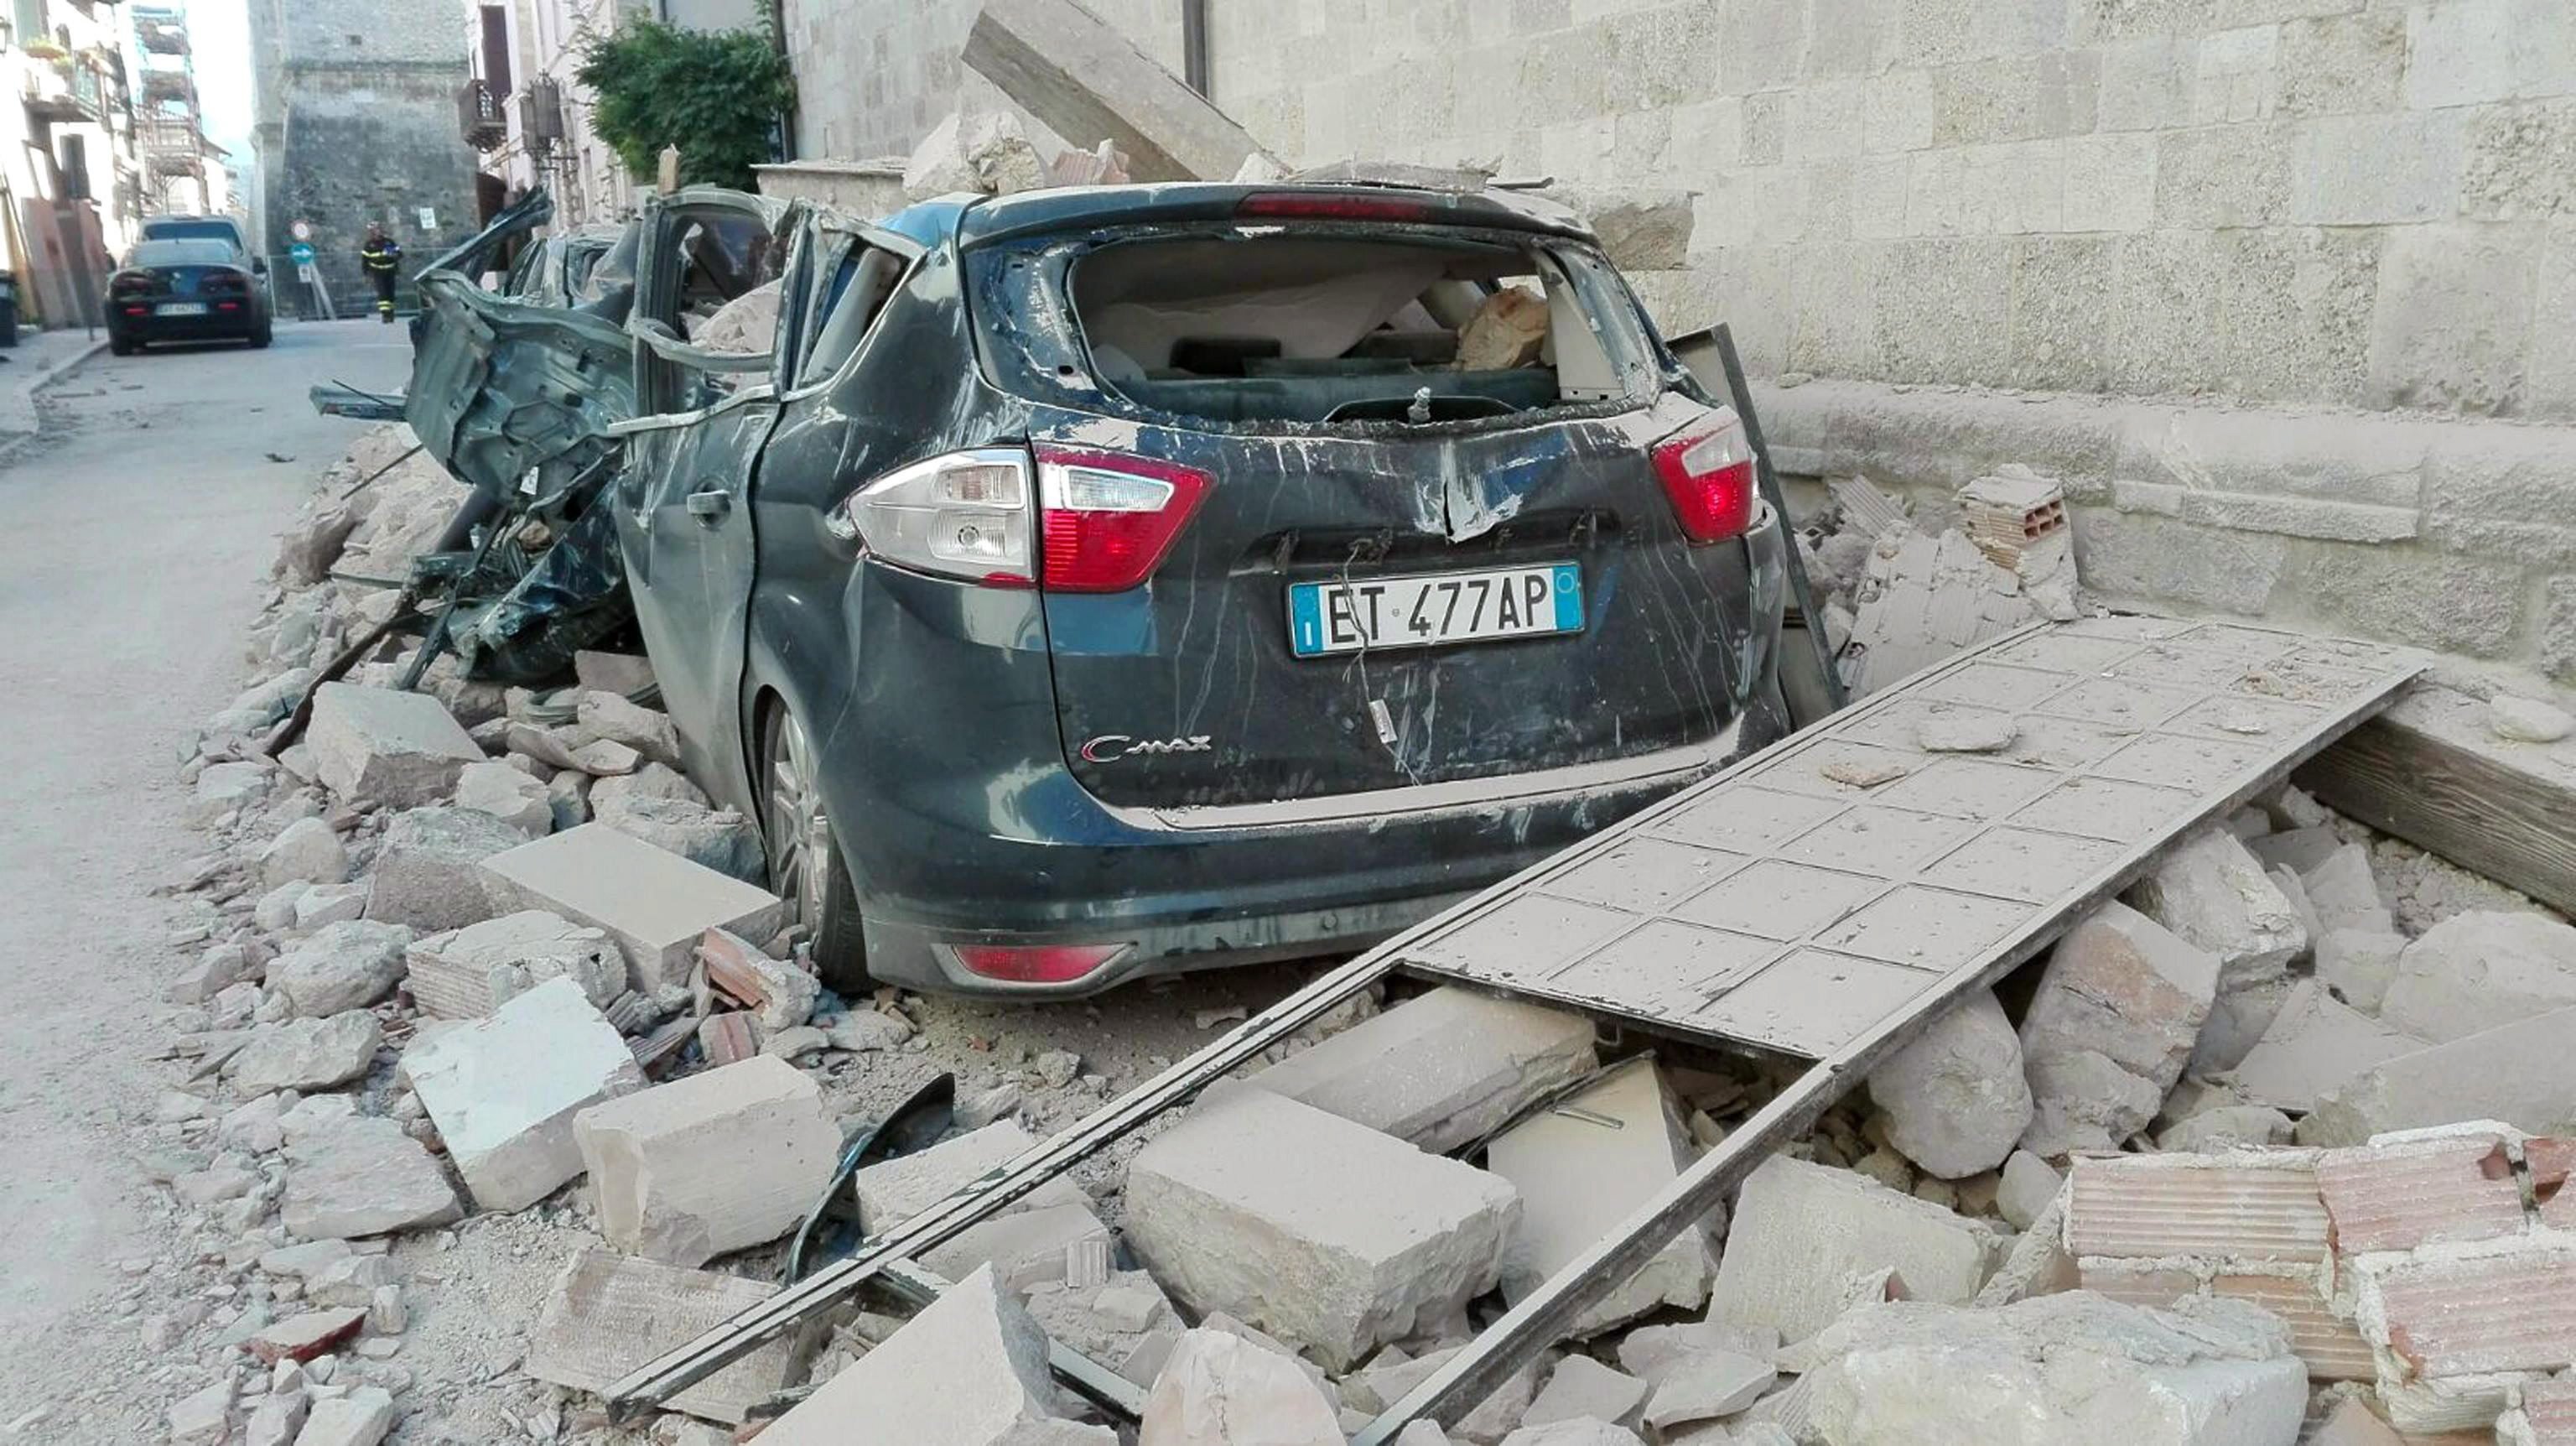 Norcia, 2016. október 30. Épületomlásban összeroncsolódott autó áll a kõtörmelék mellett a közép-olaszországi Norciában 2016. október 30-án, miután a reggeli órákban Richter skála szerinti 6,5-ös erõsségû földrengés rázta meg a térséget. A földmozgás miatt, amelynek epicentruma Norcia és a tõle 20 kilométerre, északra fekvõ Preci között 10 kilométeres mélységben volt, súlyos károk keletkeztek és többtucatnyian megsérültek. Október 26-án három nagy erejû földrengés pusztított Olaszország középsõ régiójában. (MTI/EPA/Matteo Guidelli)